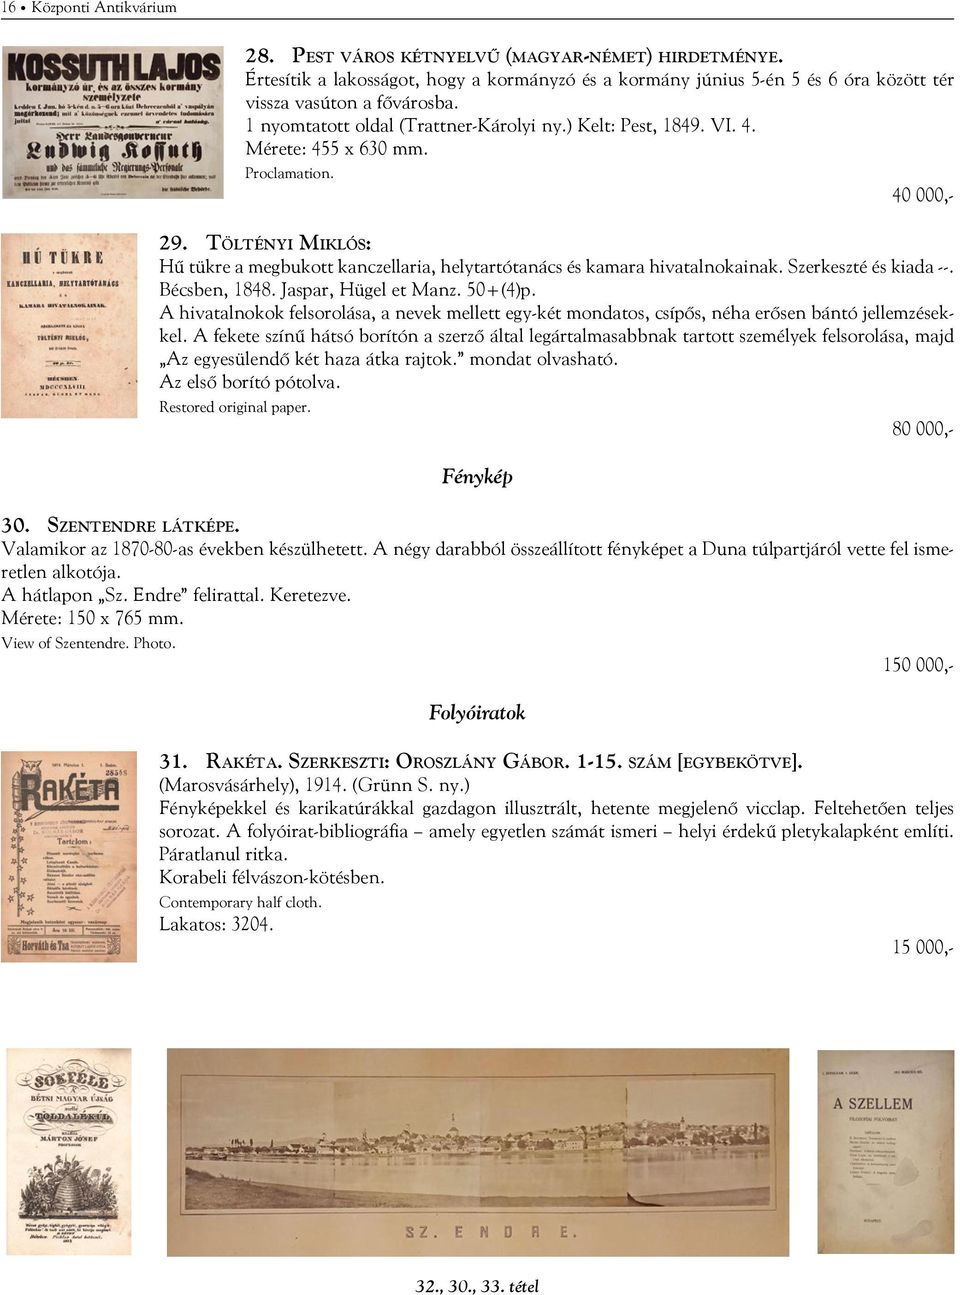 Töltényi Miklós: Hű tükre a megbukott kanczellaria, helytartótanács és kamara hivatalnokainak. Szerkeszté és kiada --. Bécsben, 1848. Jaspar, Hügel et Manz. 50+(4)p.